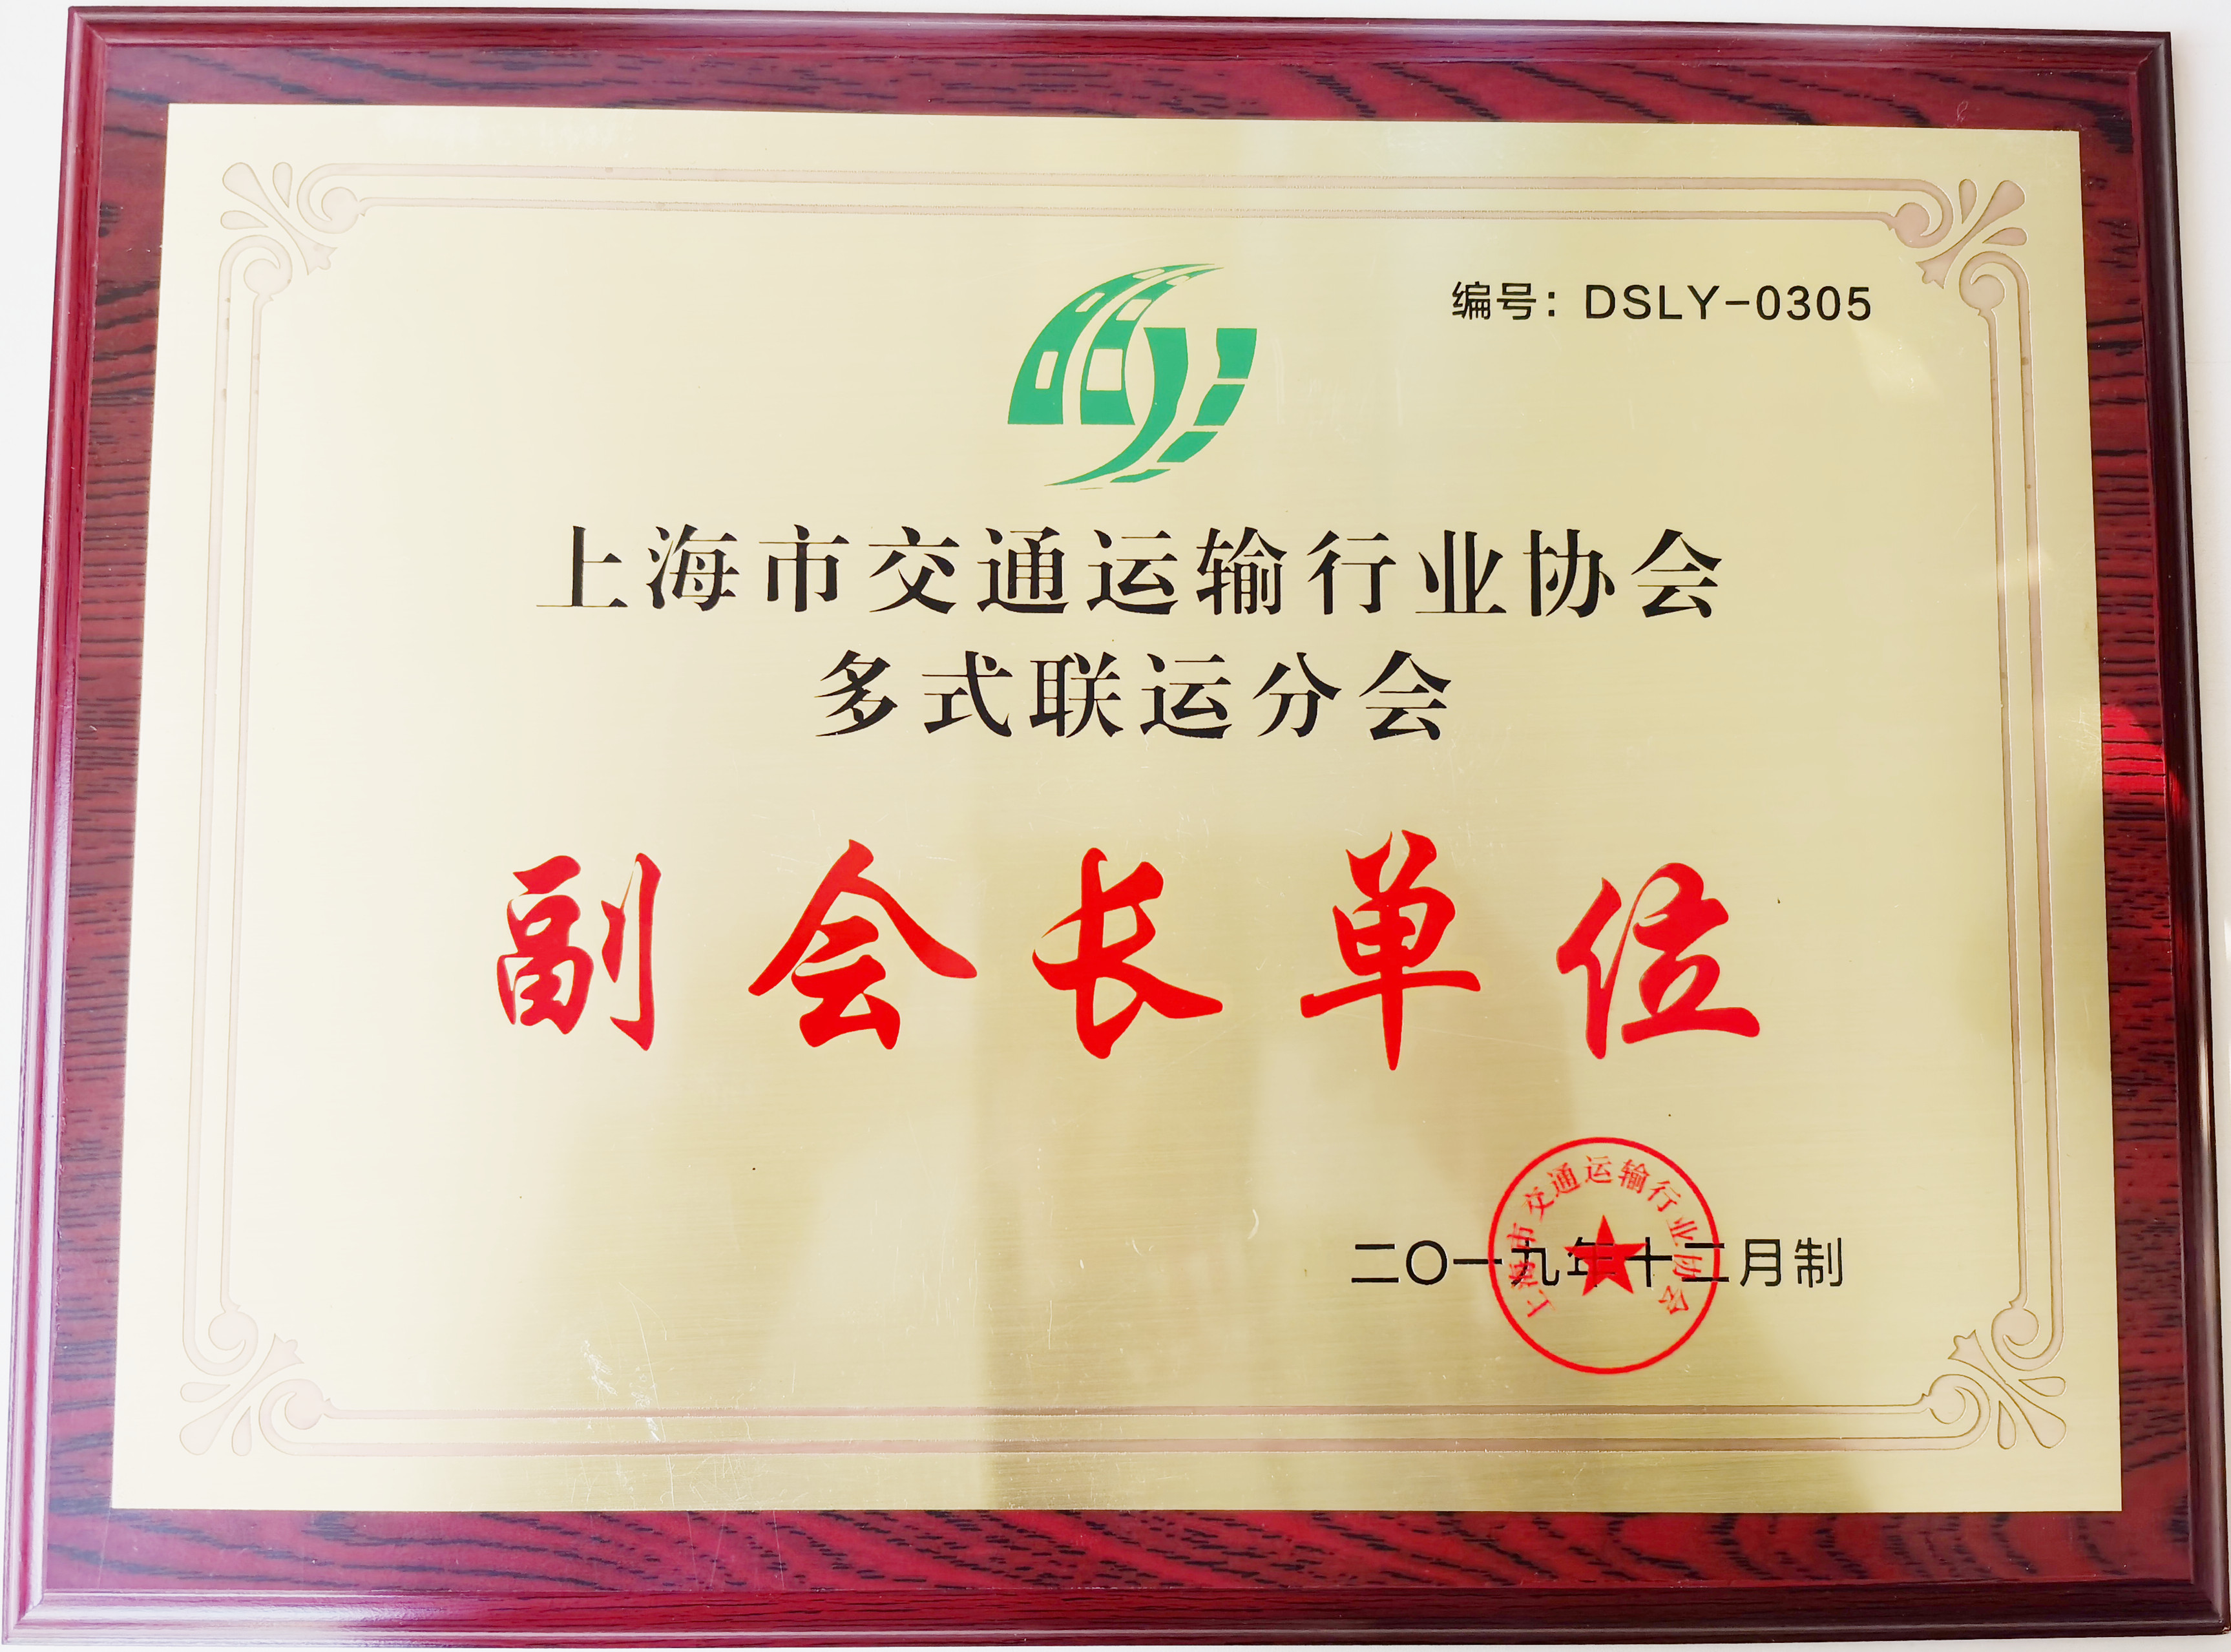 上海市交通运输协会多式联运分会副会长单位